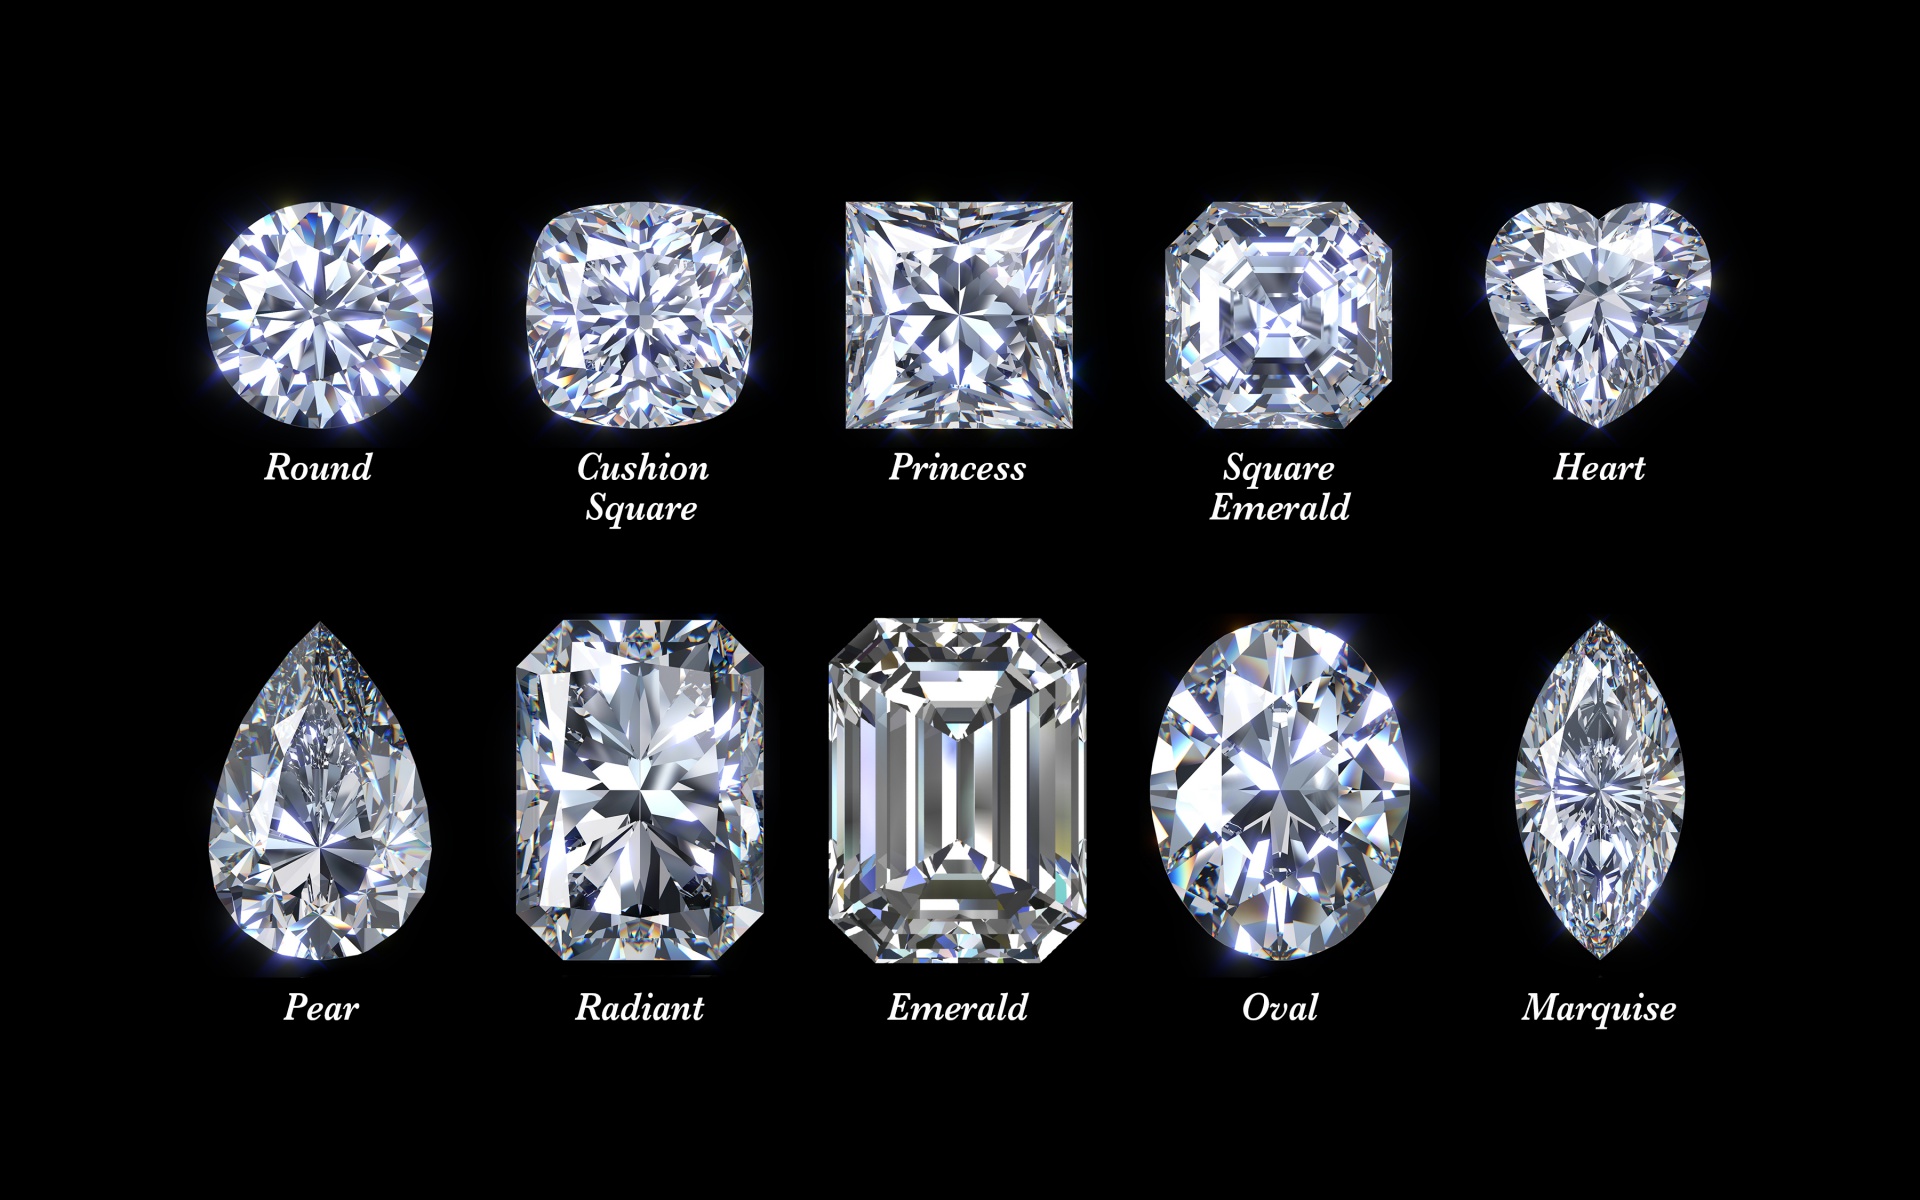 Process Of Making A Diamond